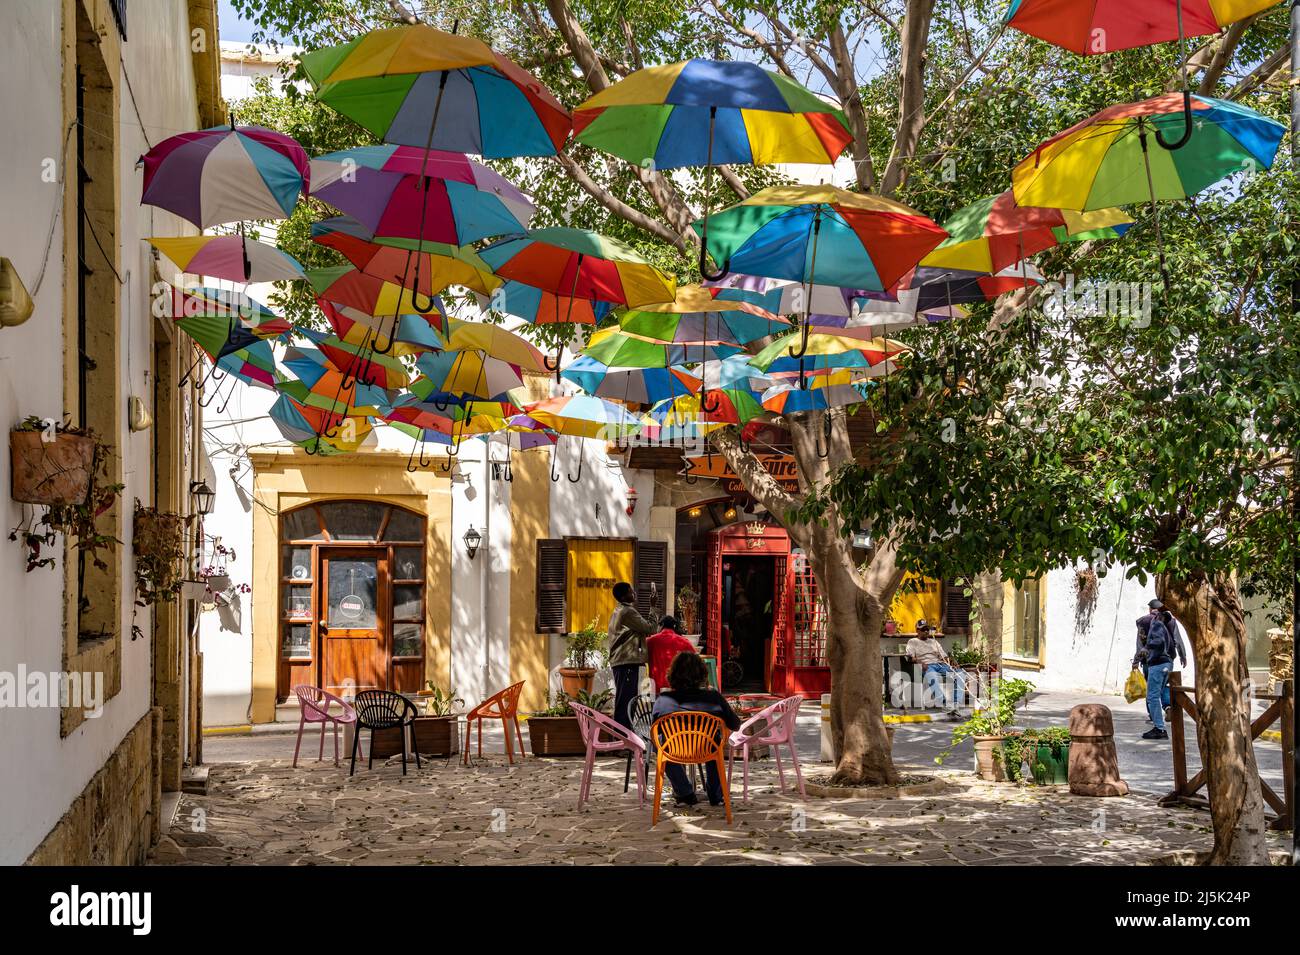 Cafe mit  bunten Schirme in Kyrenia oder Girne, Türkische Republik Nordzypern, Europa  |   Cafe with colourful umbrellas in Kyrenia or Girne, Turkish Stock Photo